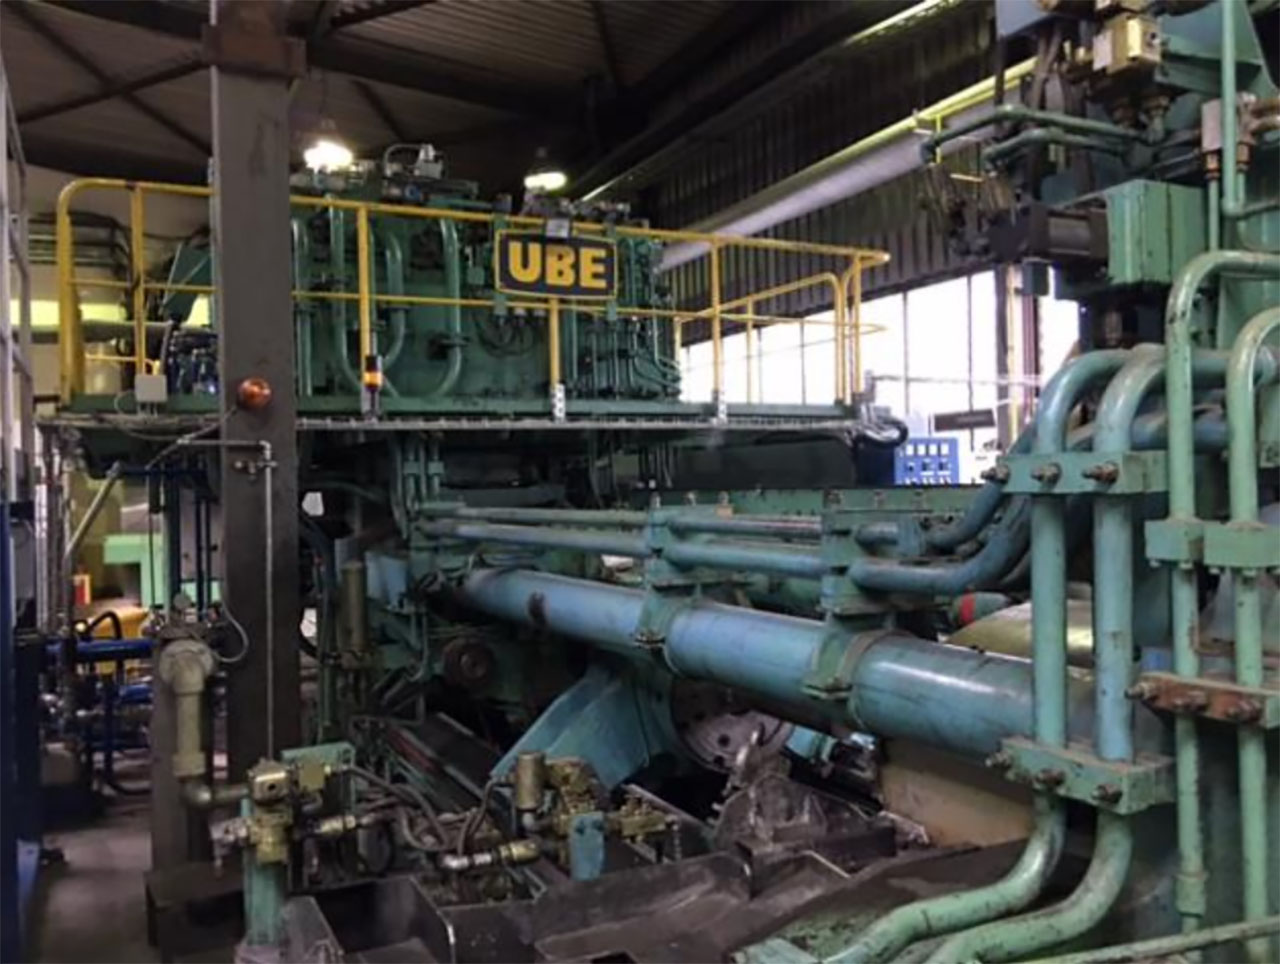 UBE 800T aluminium extrusion press PR2469, used